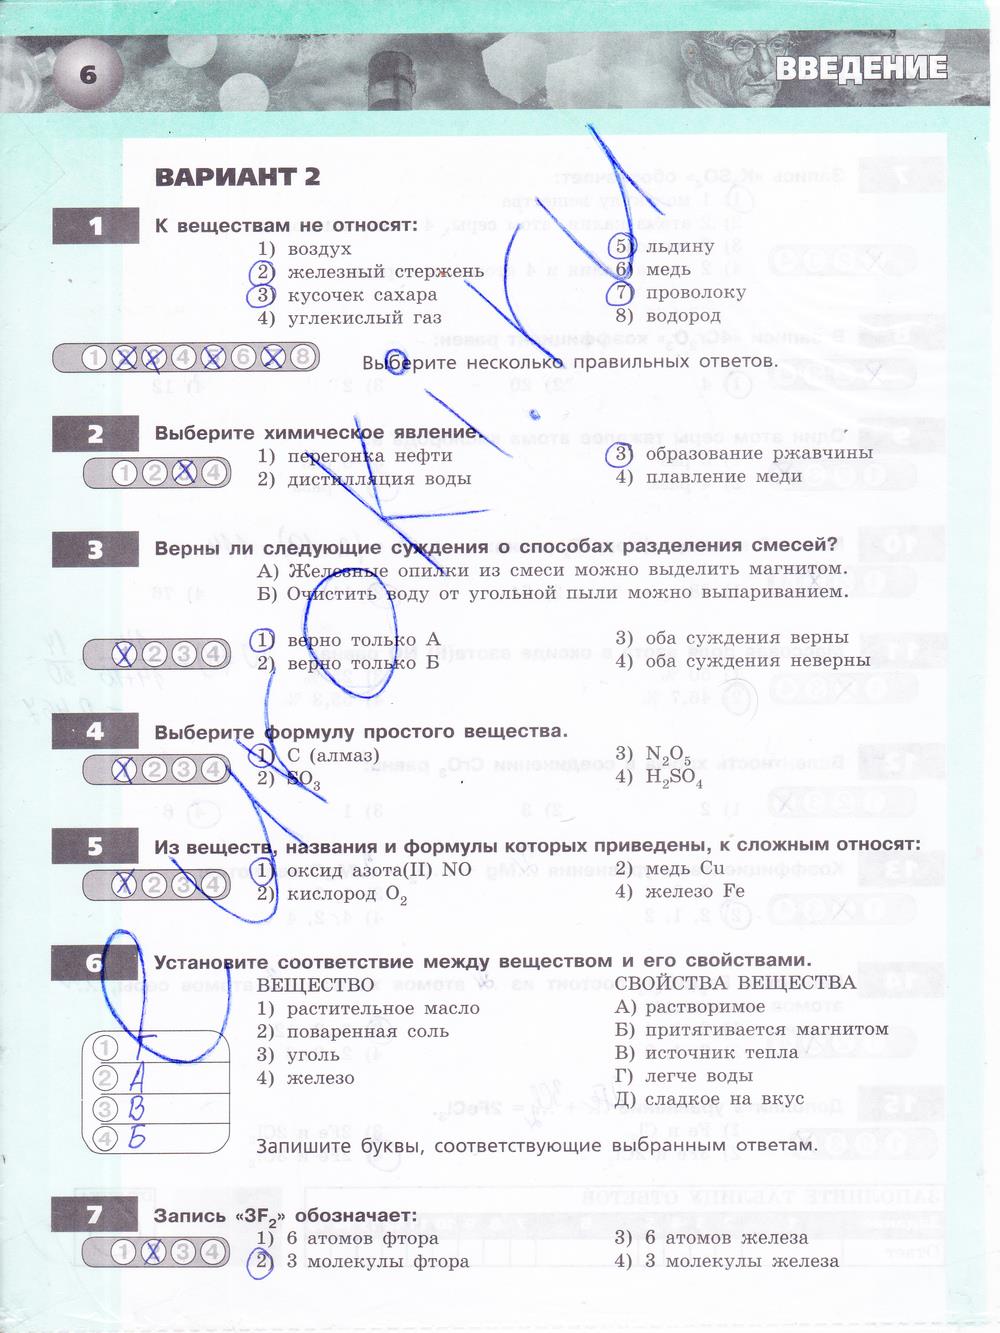 гдз 8 класс тетрадь-экзаменатор страница 6 химия Бобылева, Бирюлина